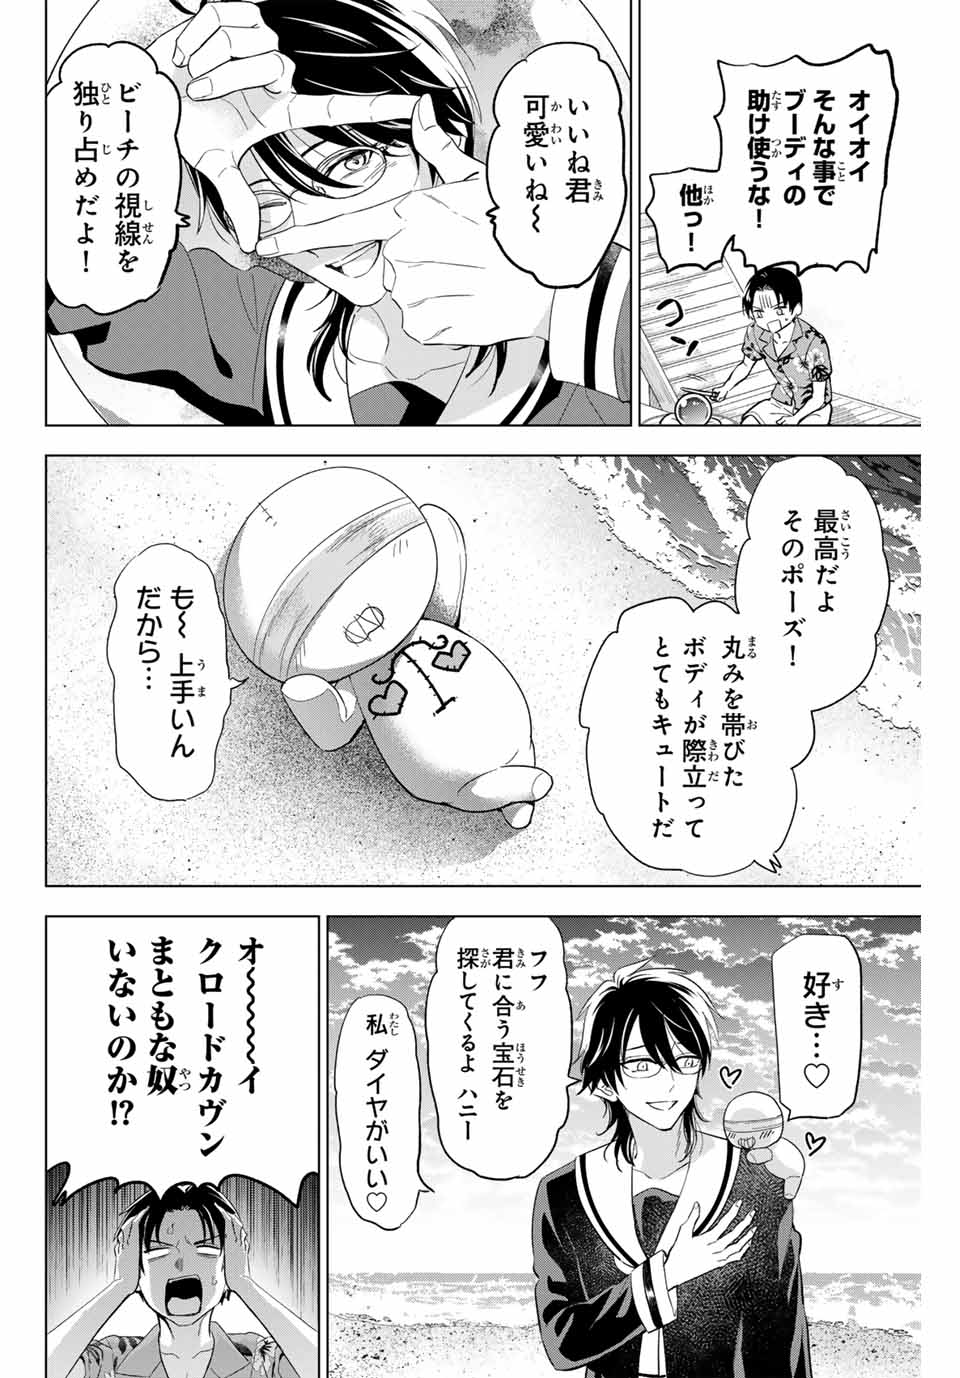 Kuroneko to Majo no Kyoushitsu - Chapter 49 - Page 4